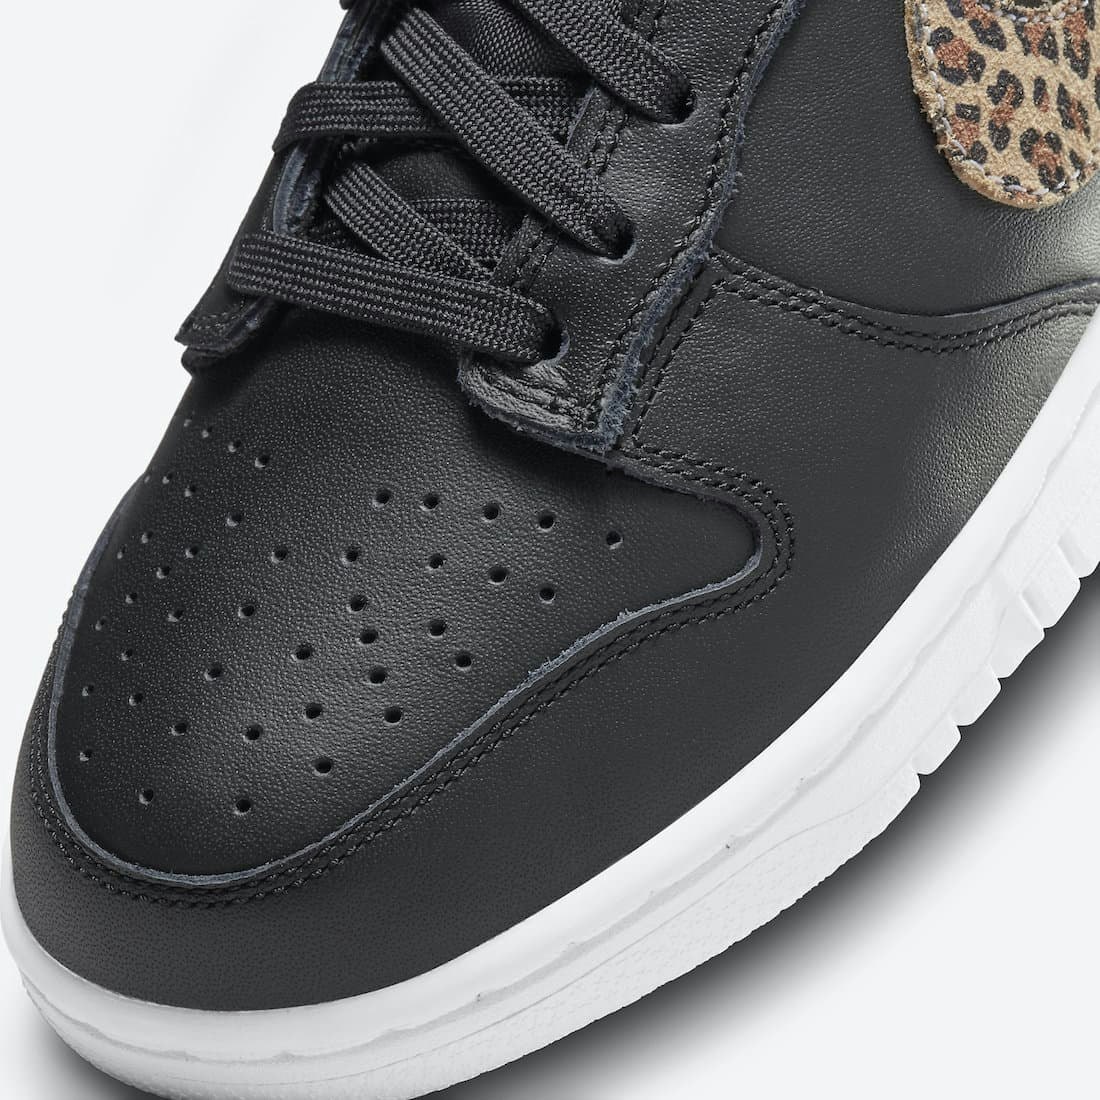 Nike Dunk Low "Black Leopard"